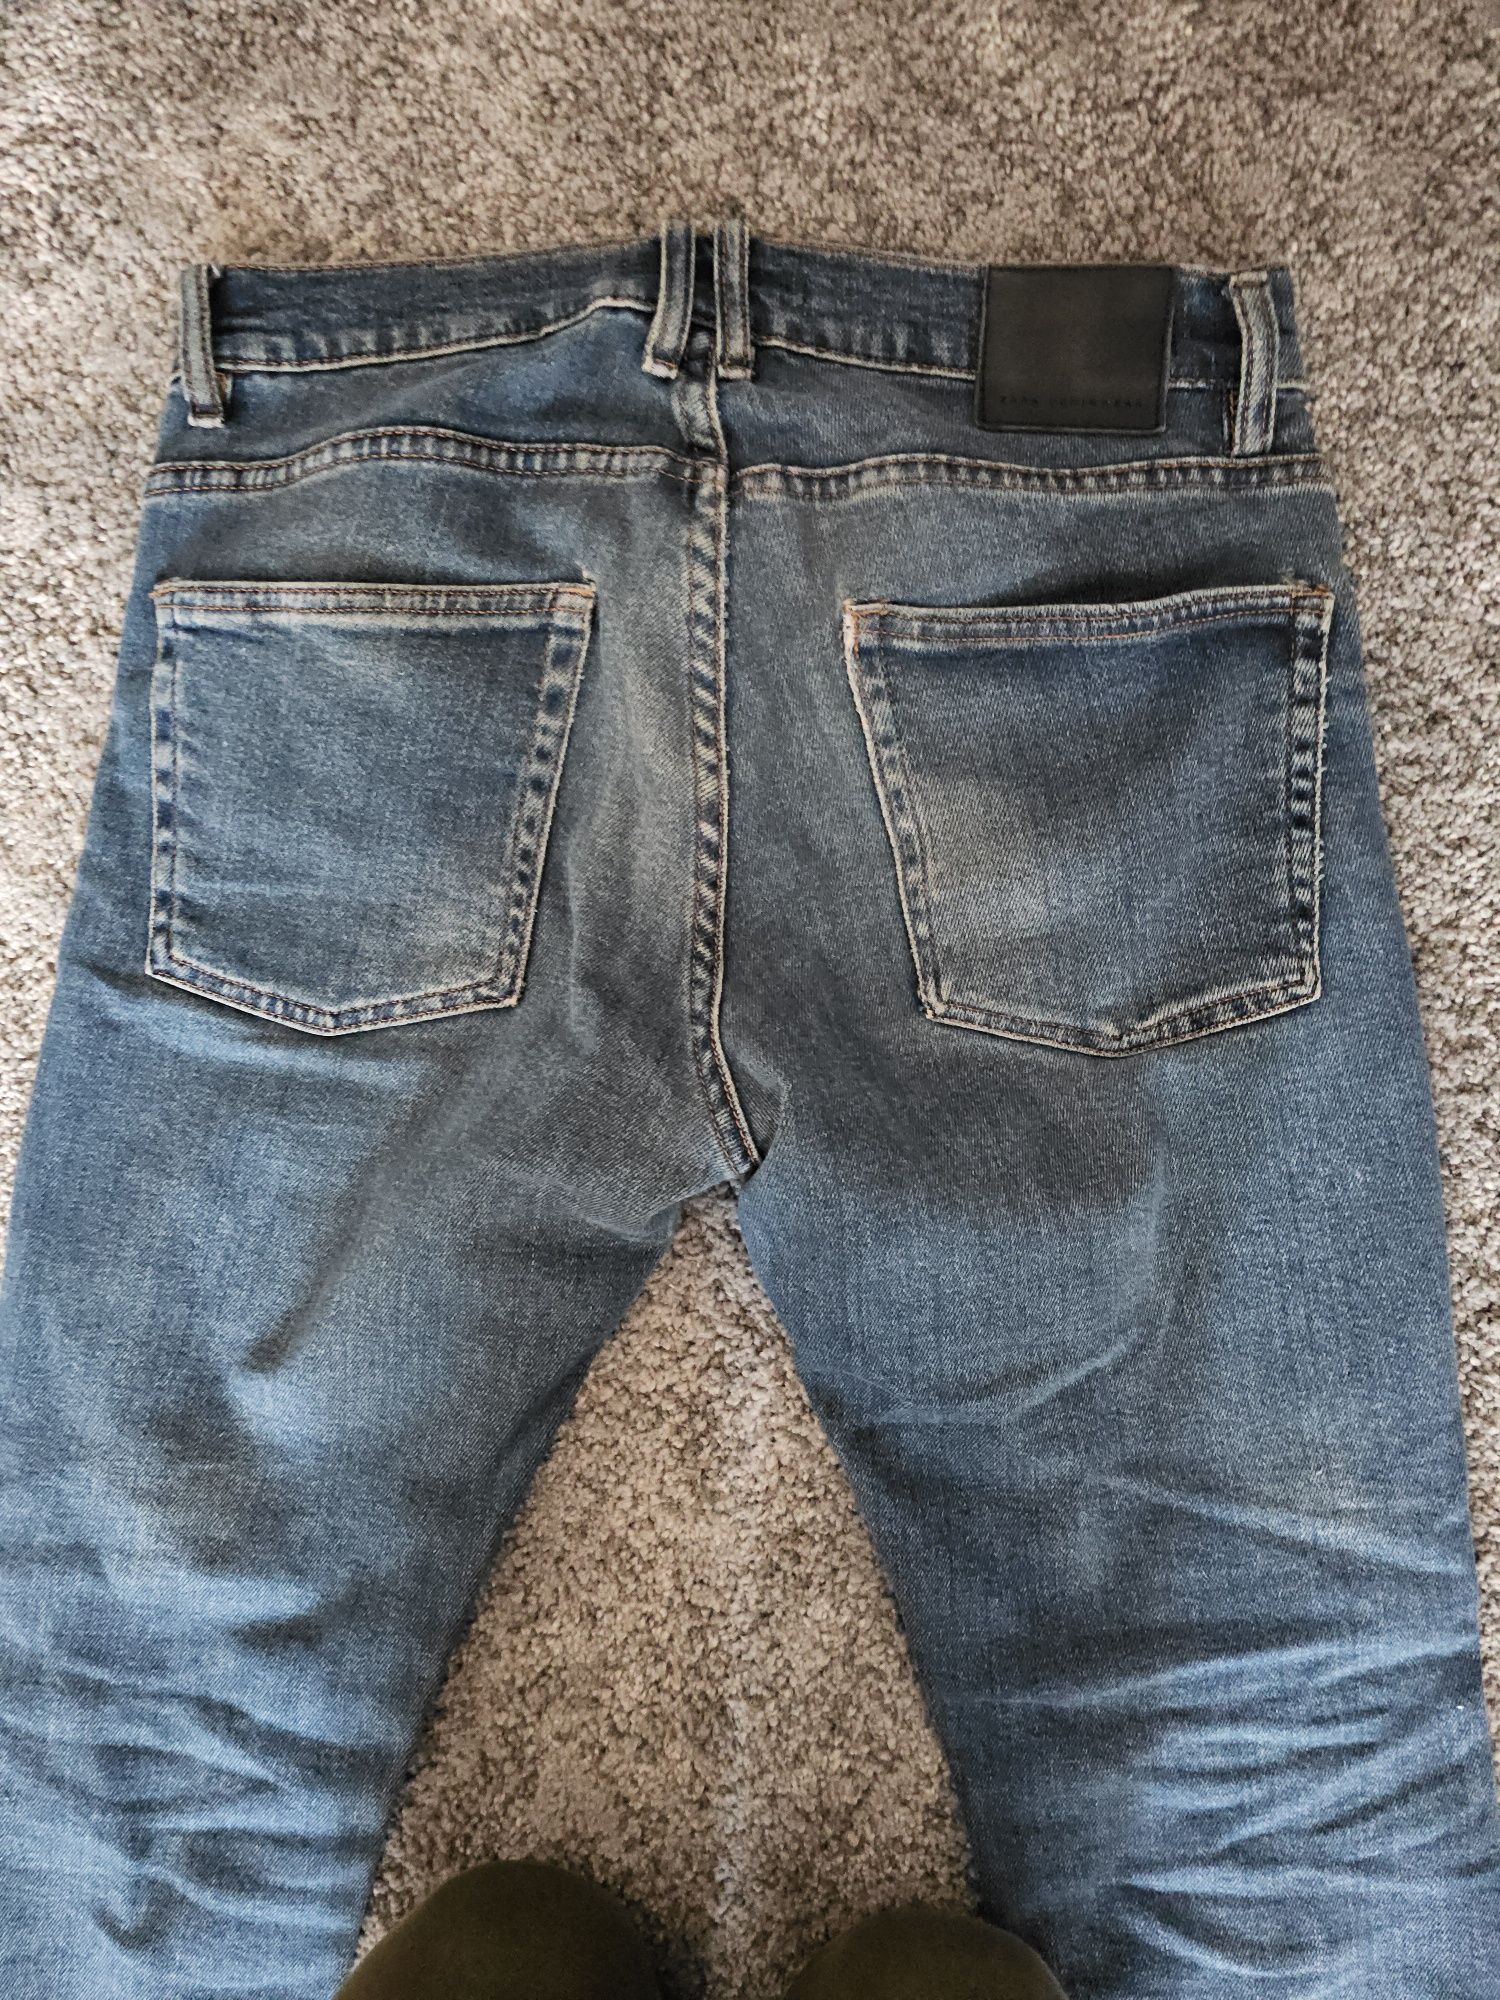 Jeans Zara man
99% cotton